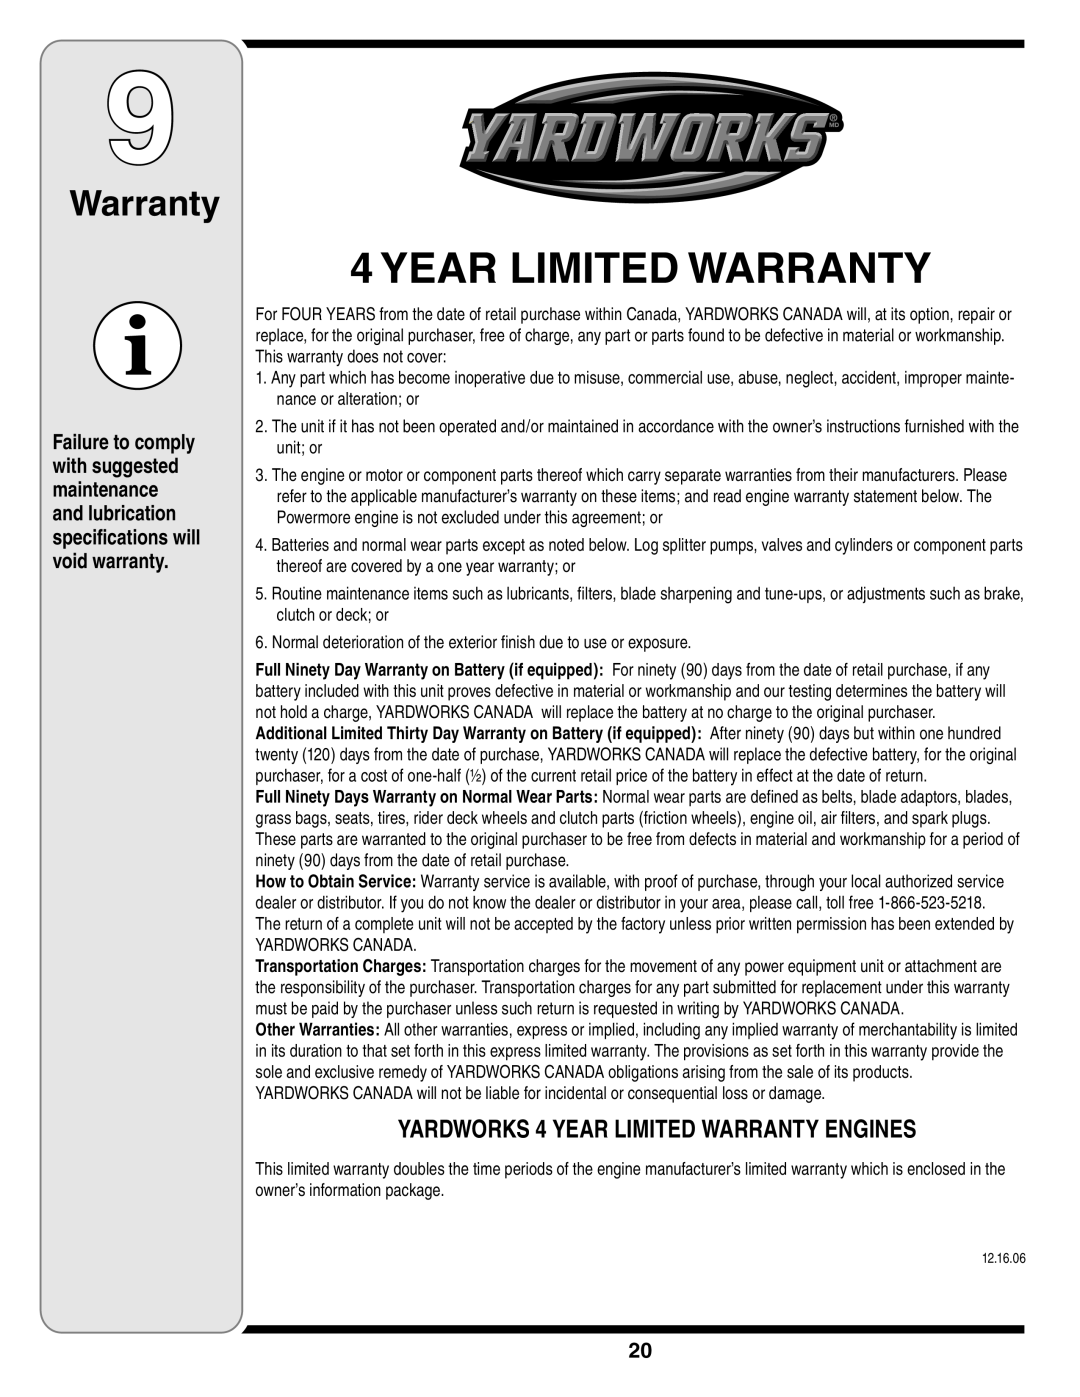 MTD 769-03250 warranty Year Limited Warranty, YARDWORKS 4 YEAR LIMITED WARRANTY ENGINES 